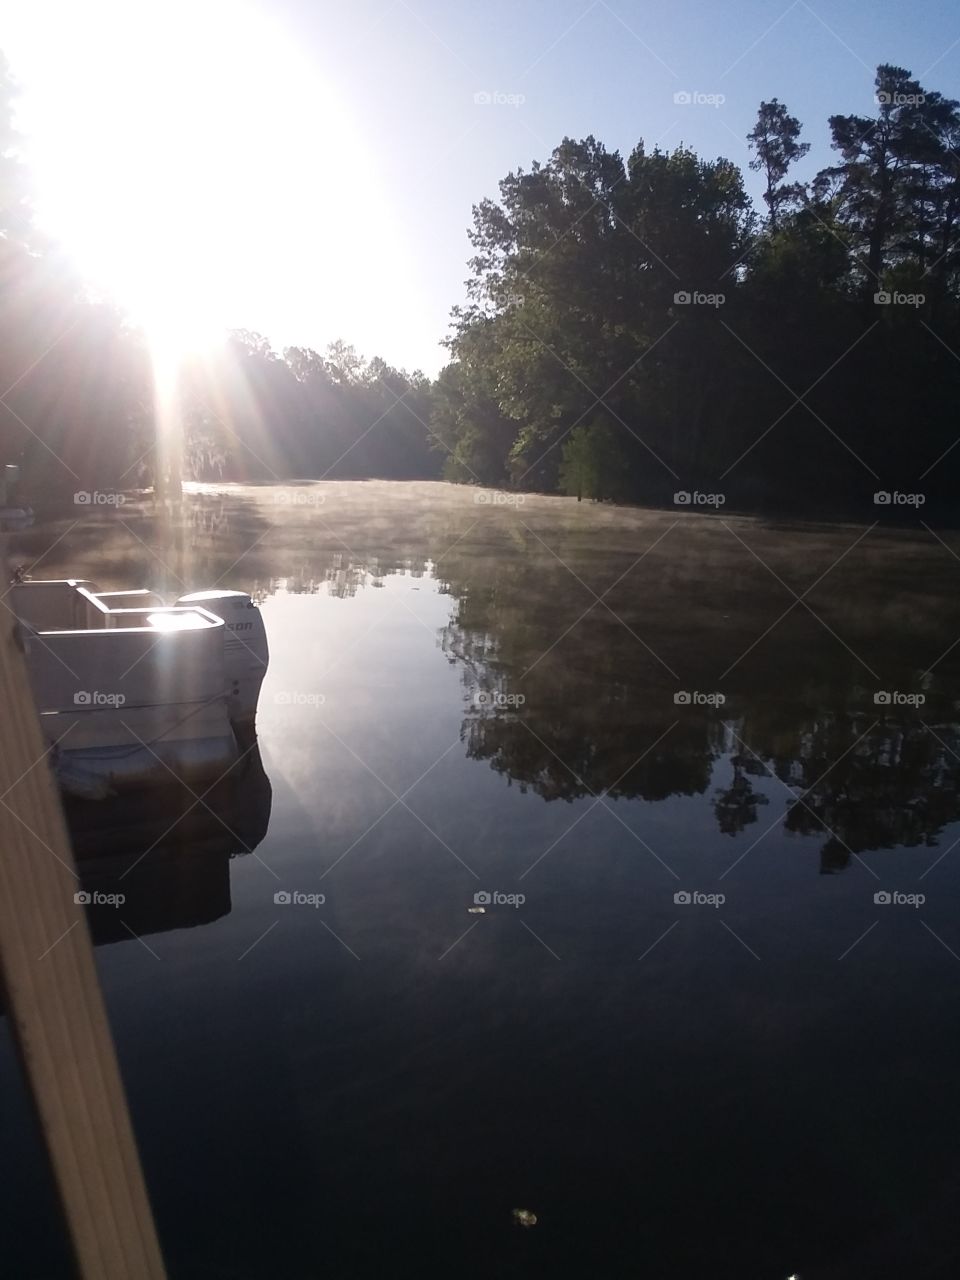 Mornings at the lake!